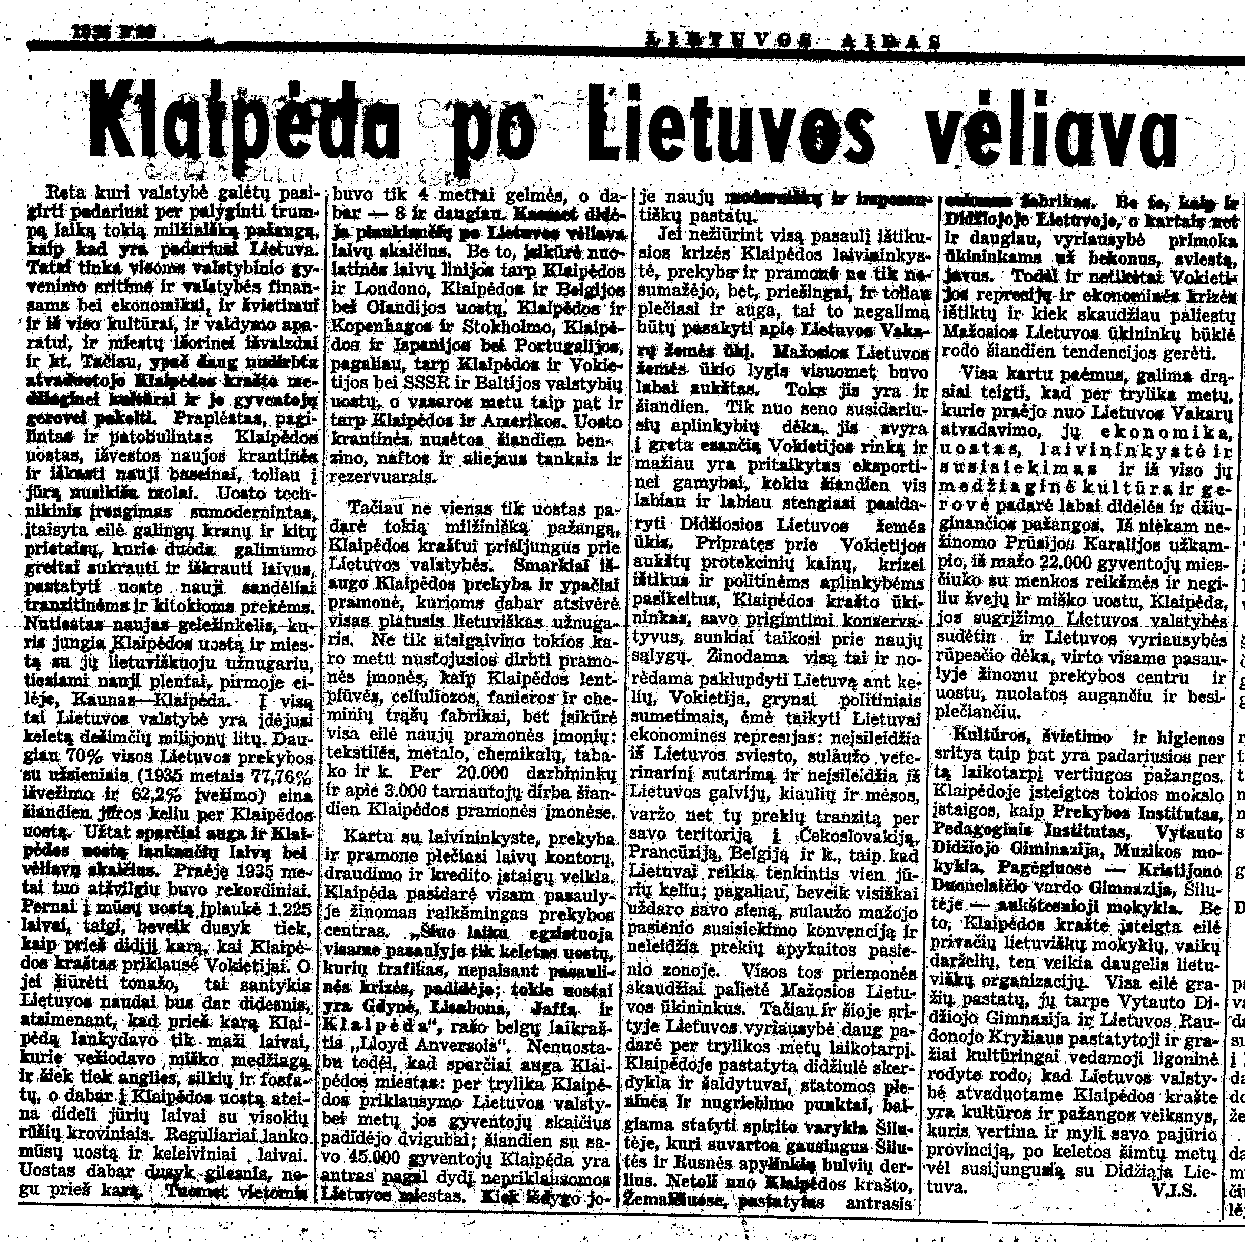 Klaipėda po Lietuvos vėliava